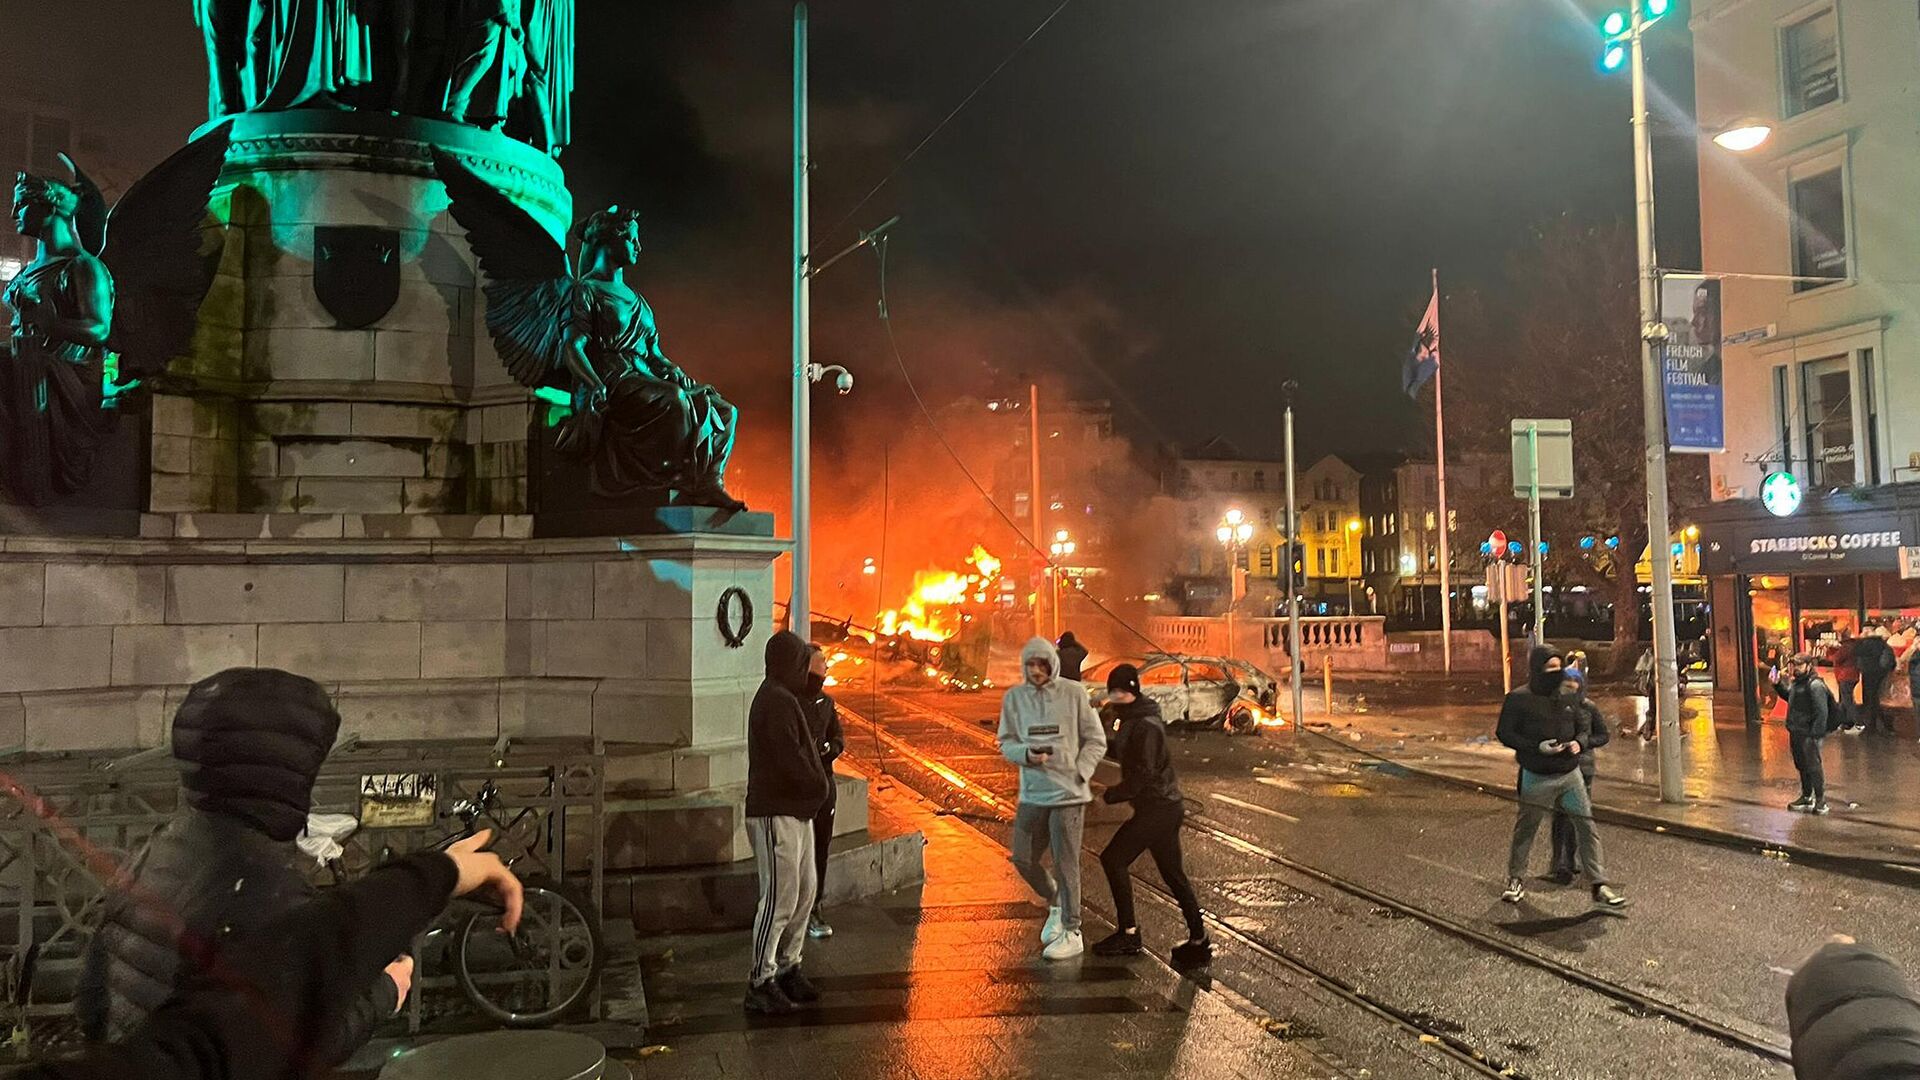 Артем Пивоваров оказался в эпицентре массовых протестов в столице Ирландии